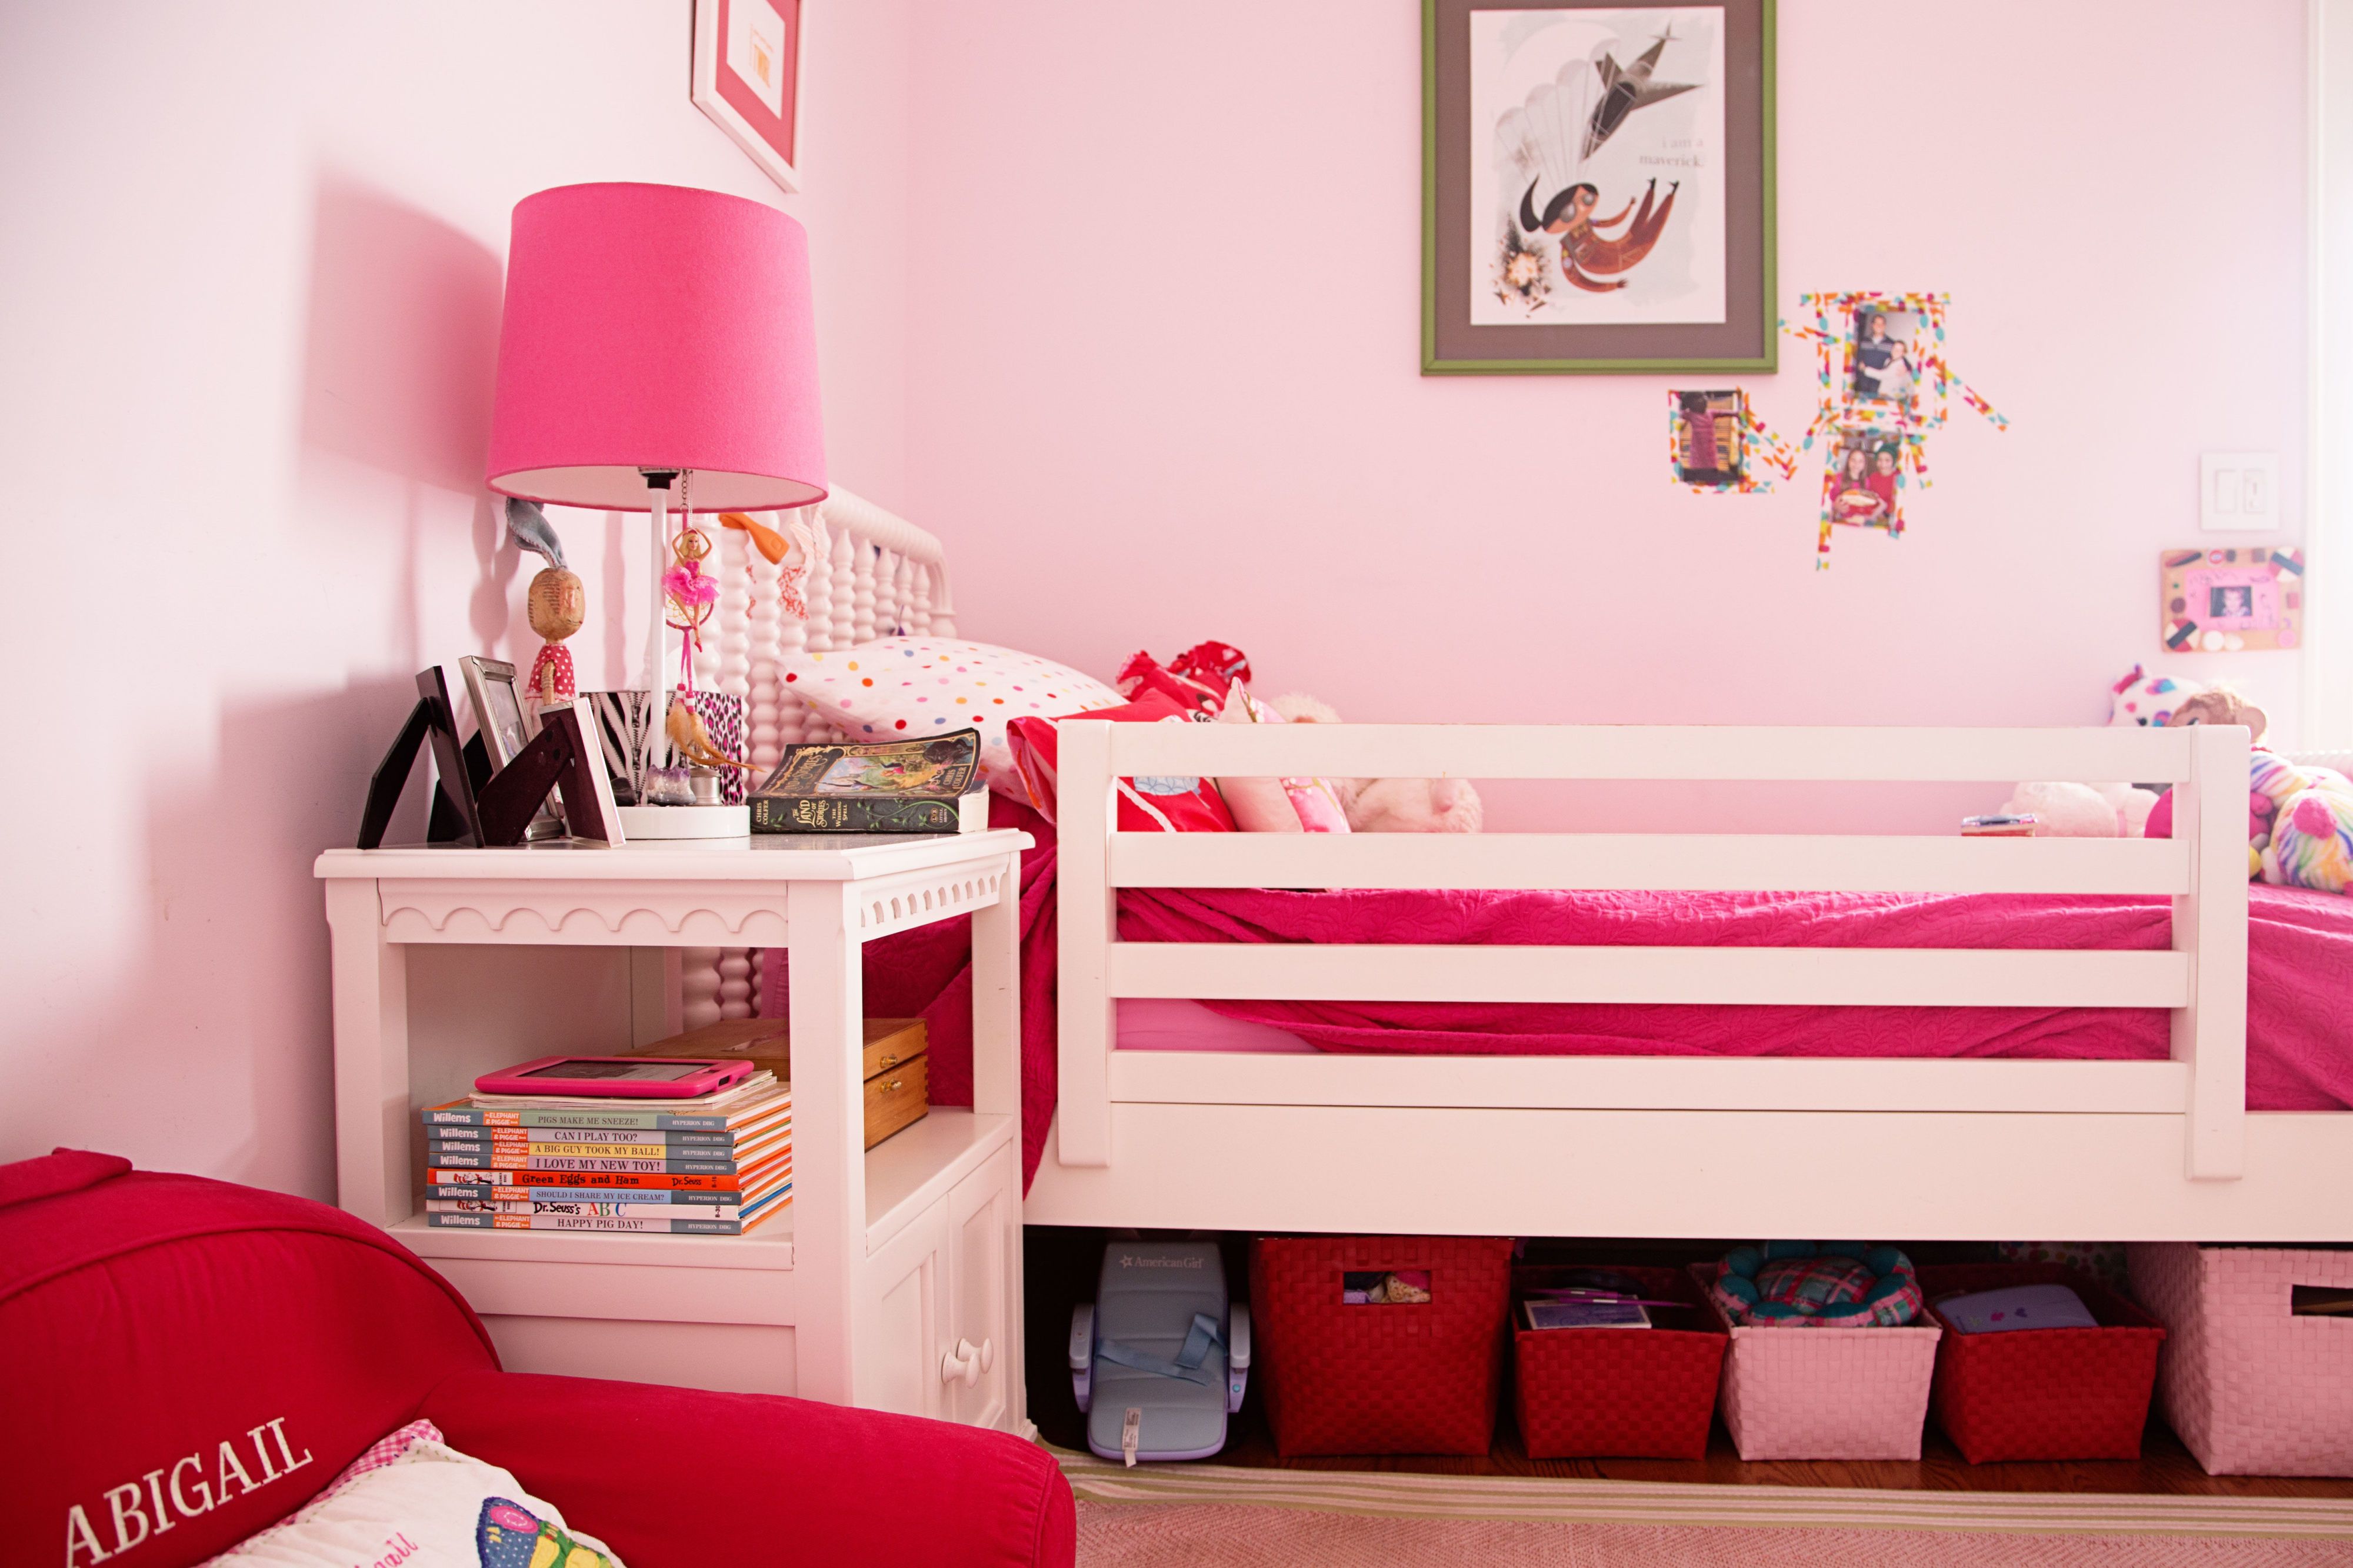 organize little girl room